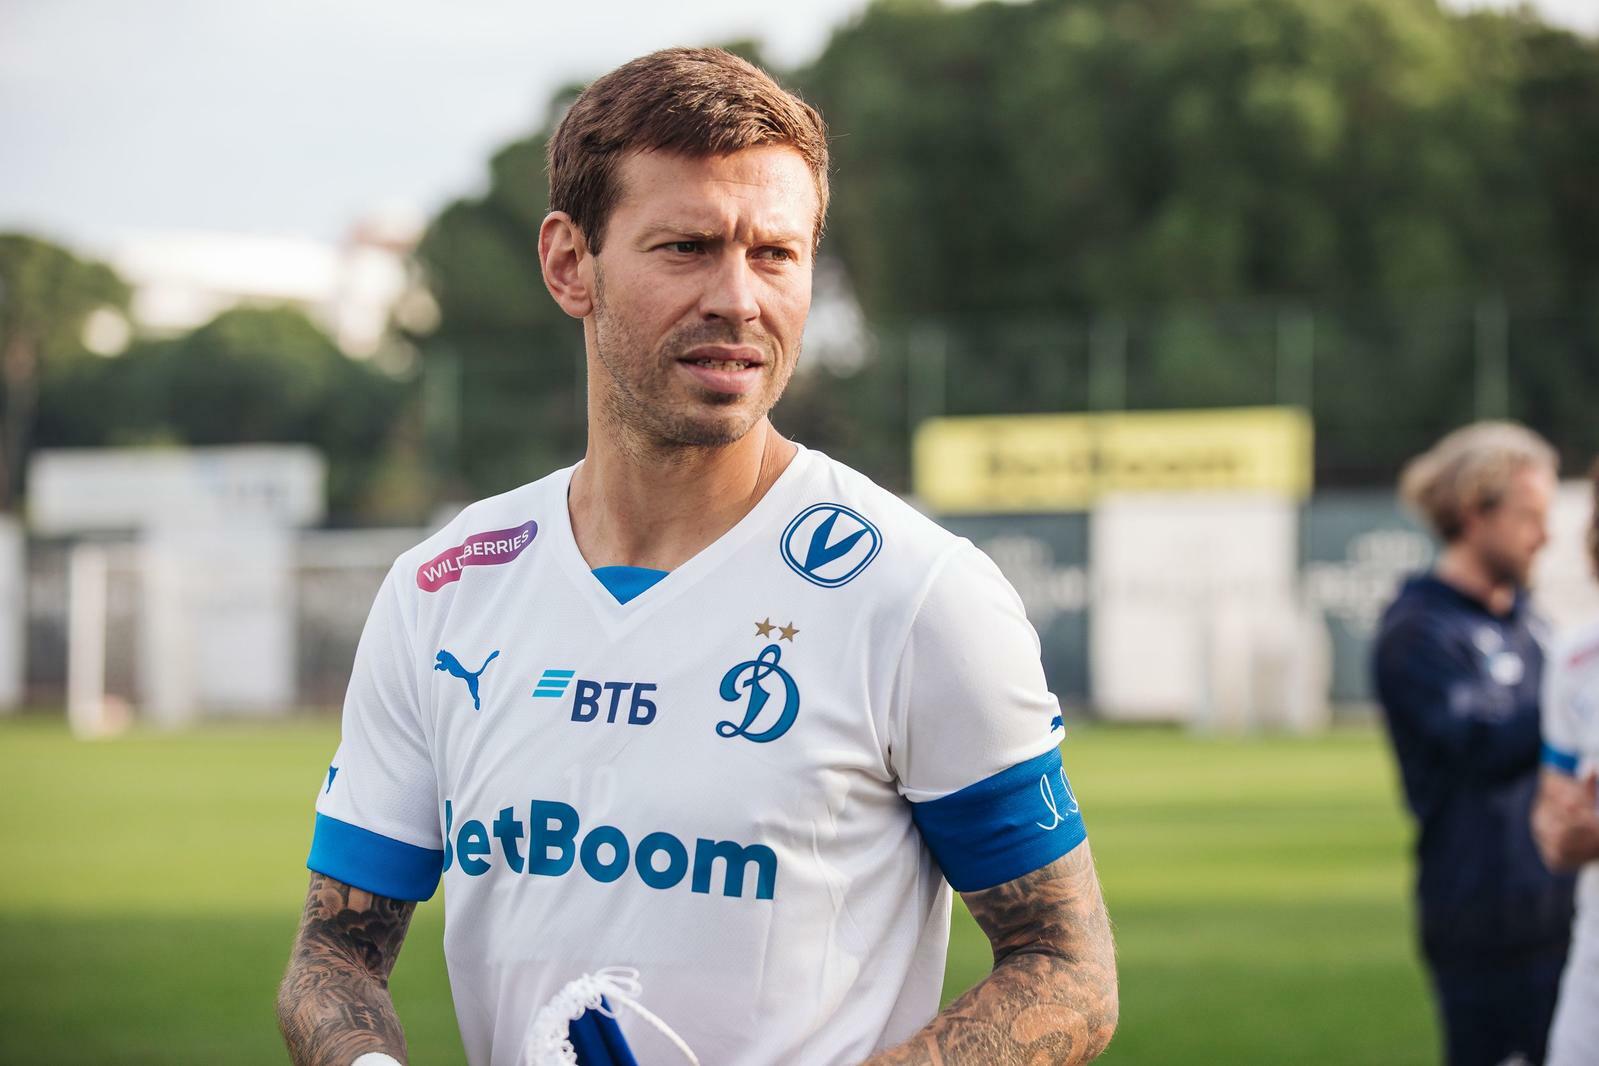 Noticias del FC "Dynamo" Moscú | Fiódor Smólov: "Es genial ver caras conocidas de los aficionados en los entrenamientos, una gran tradición". Sitio oficial del club Dynamo.